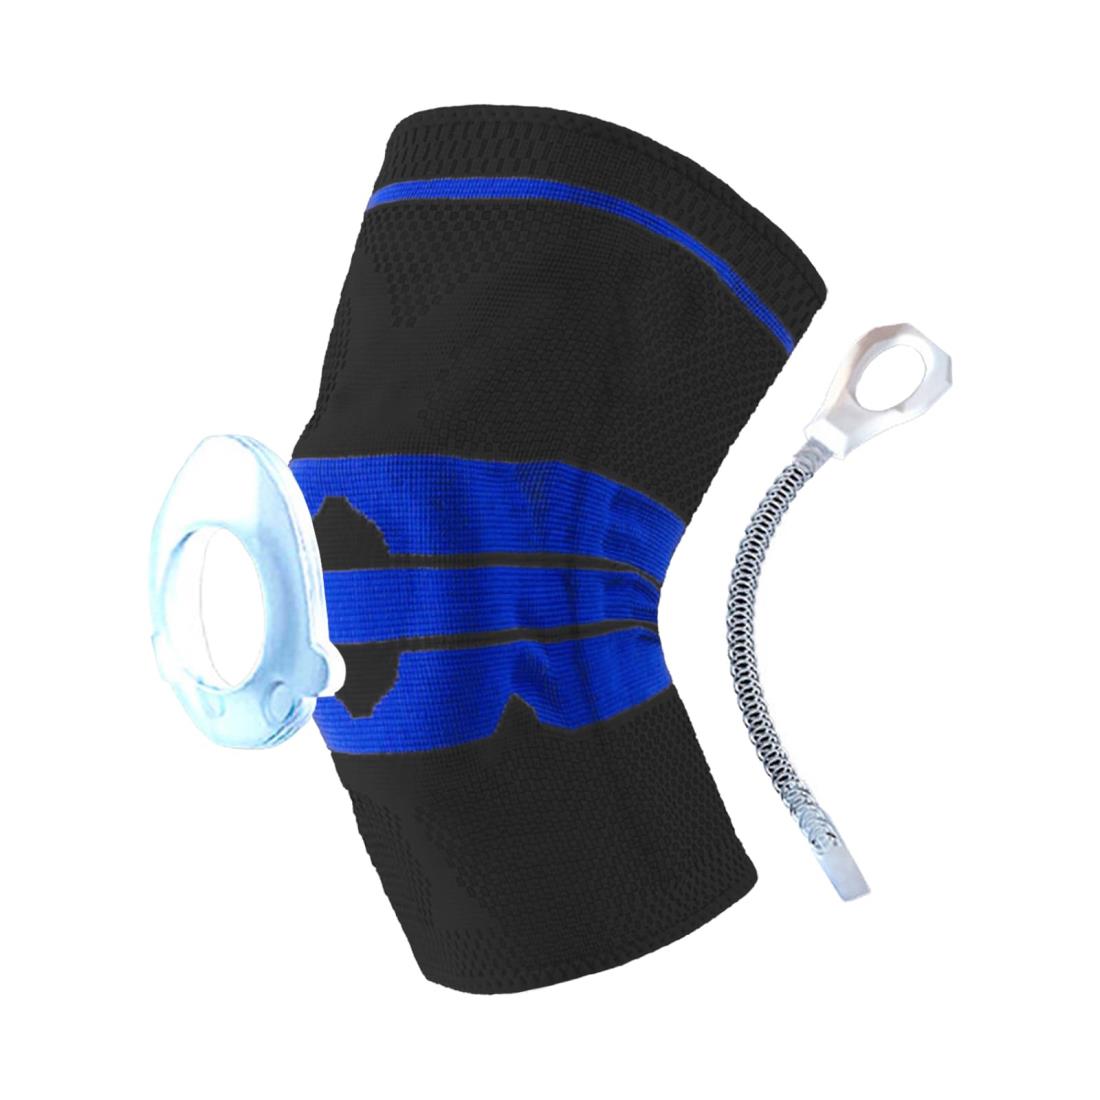 膝サポーター 半月板 膝の皿 安定 動き補助 通気 速乾 快適 (2XL, ブルー)